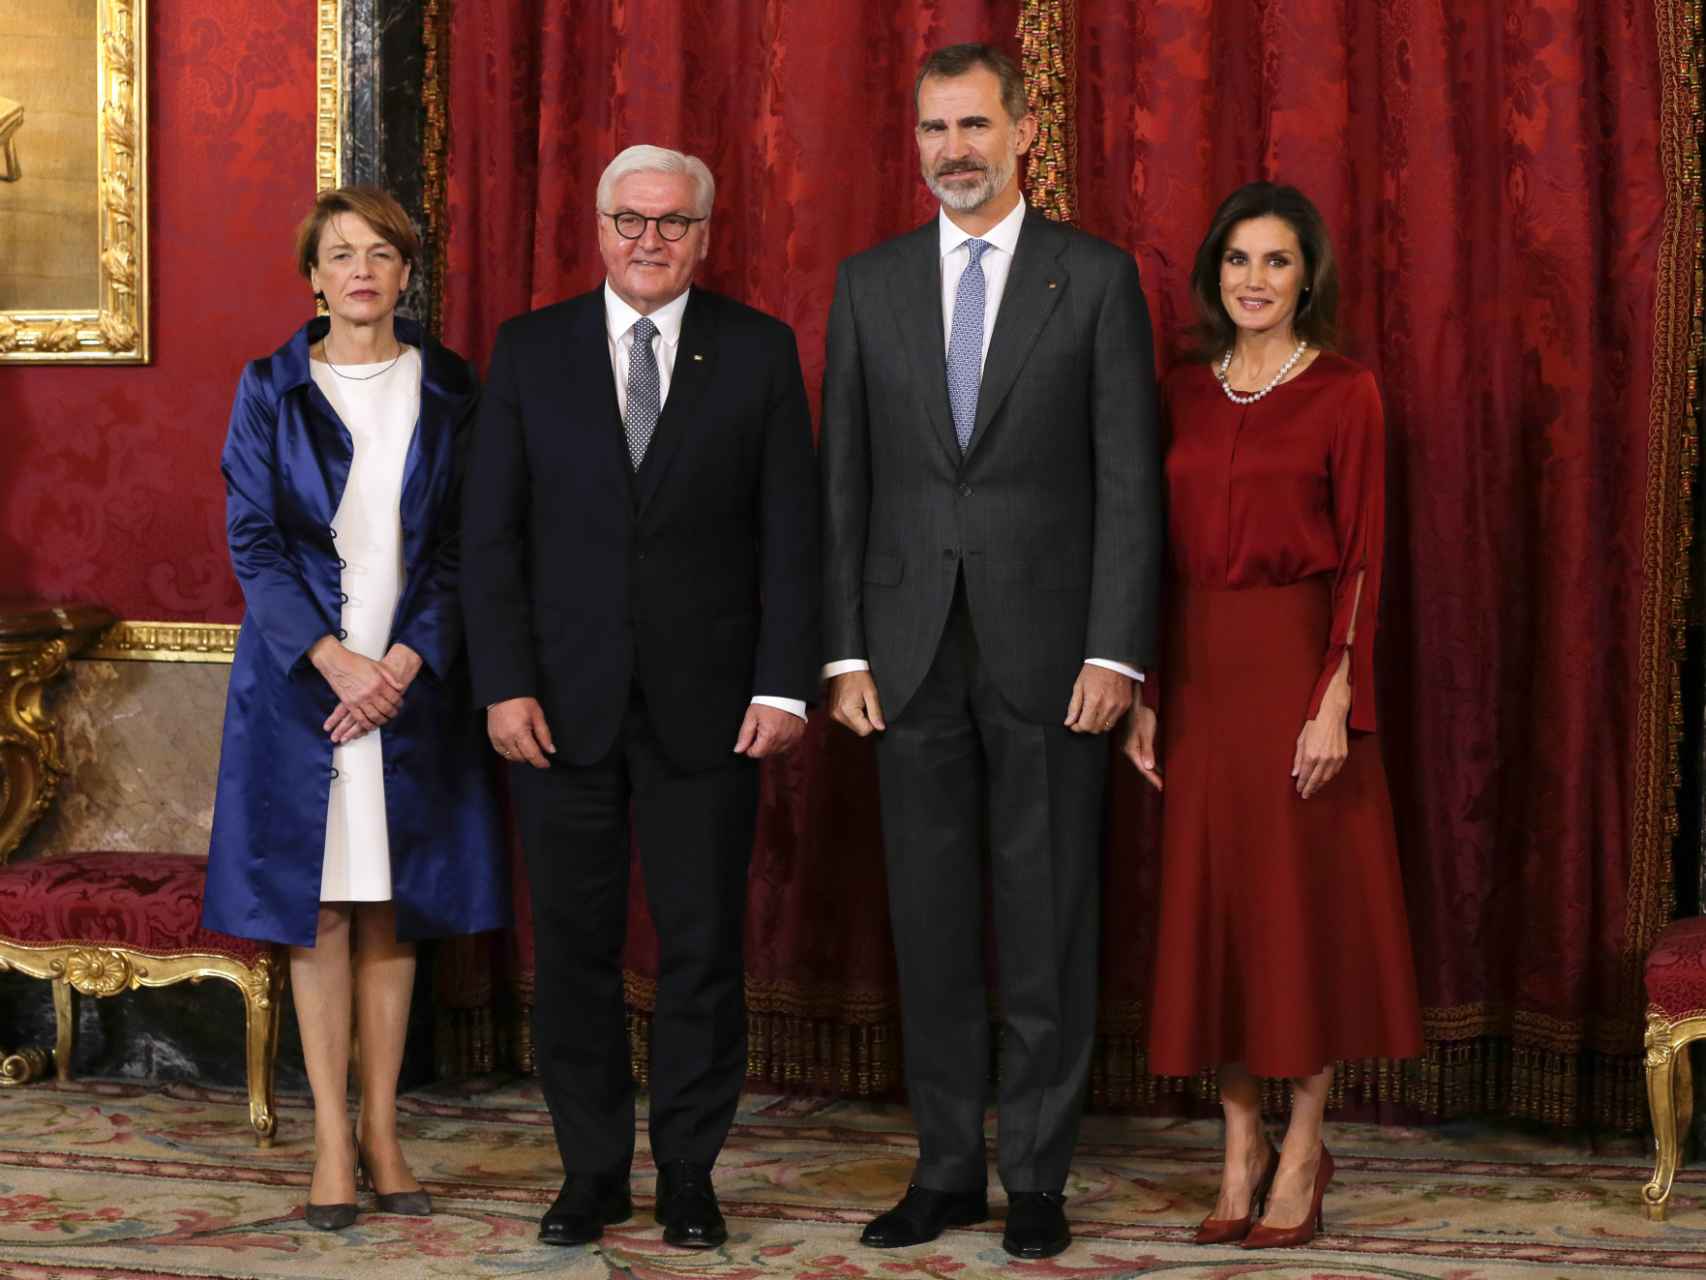 El presidente alemán y su esposa, durante su visita a Zarzuela.